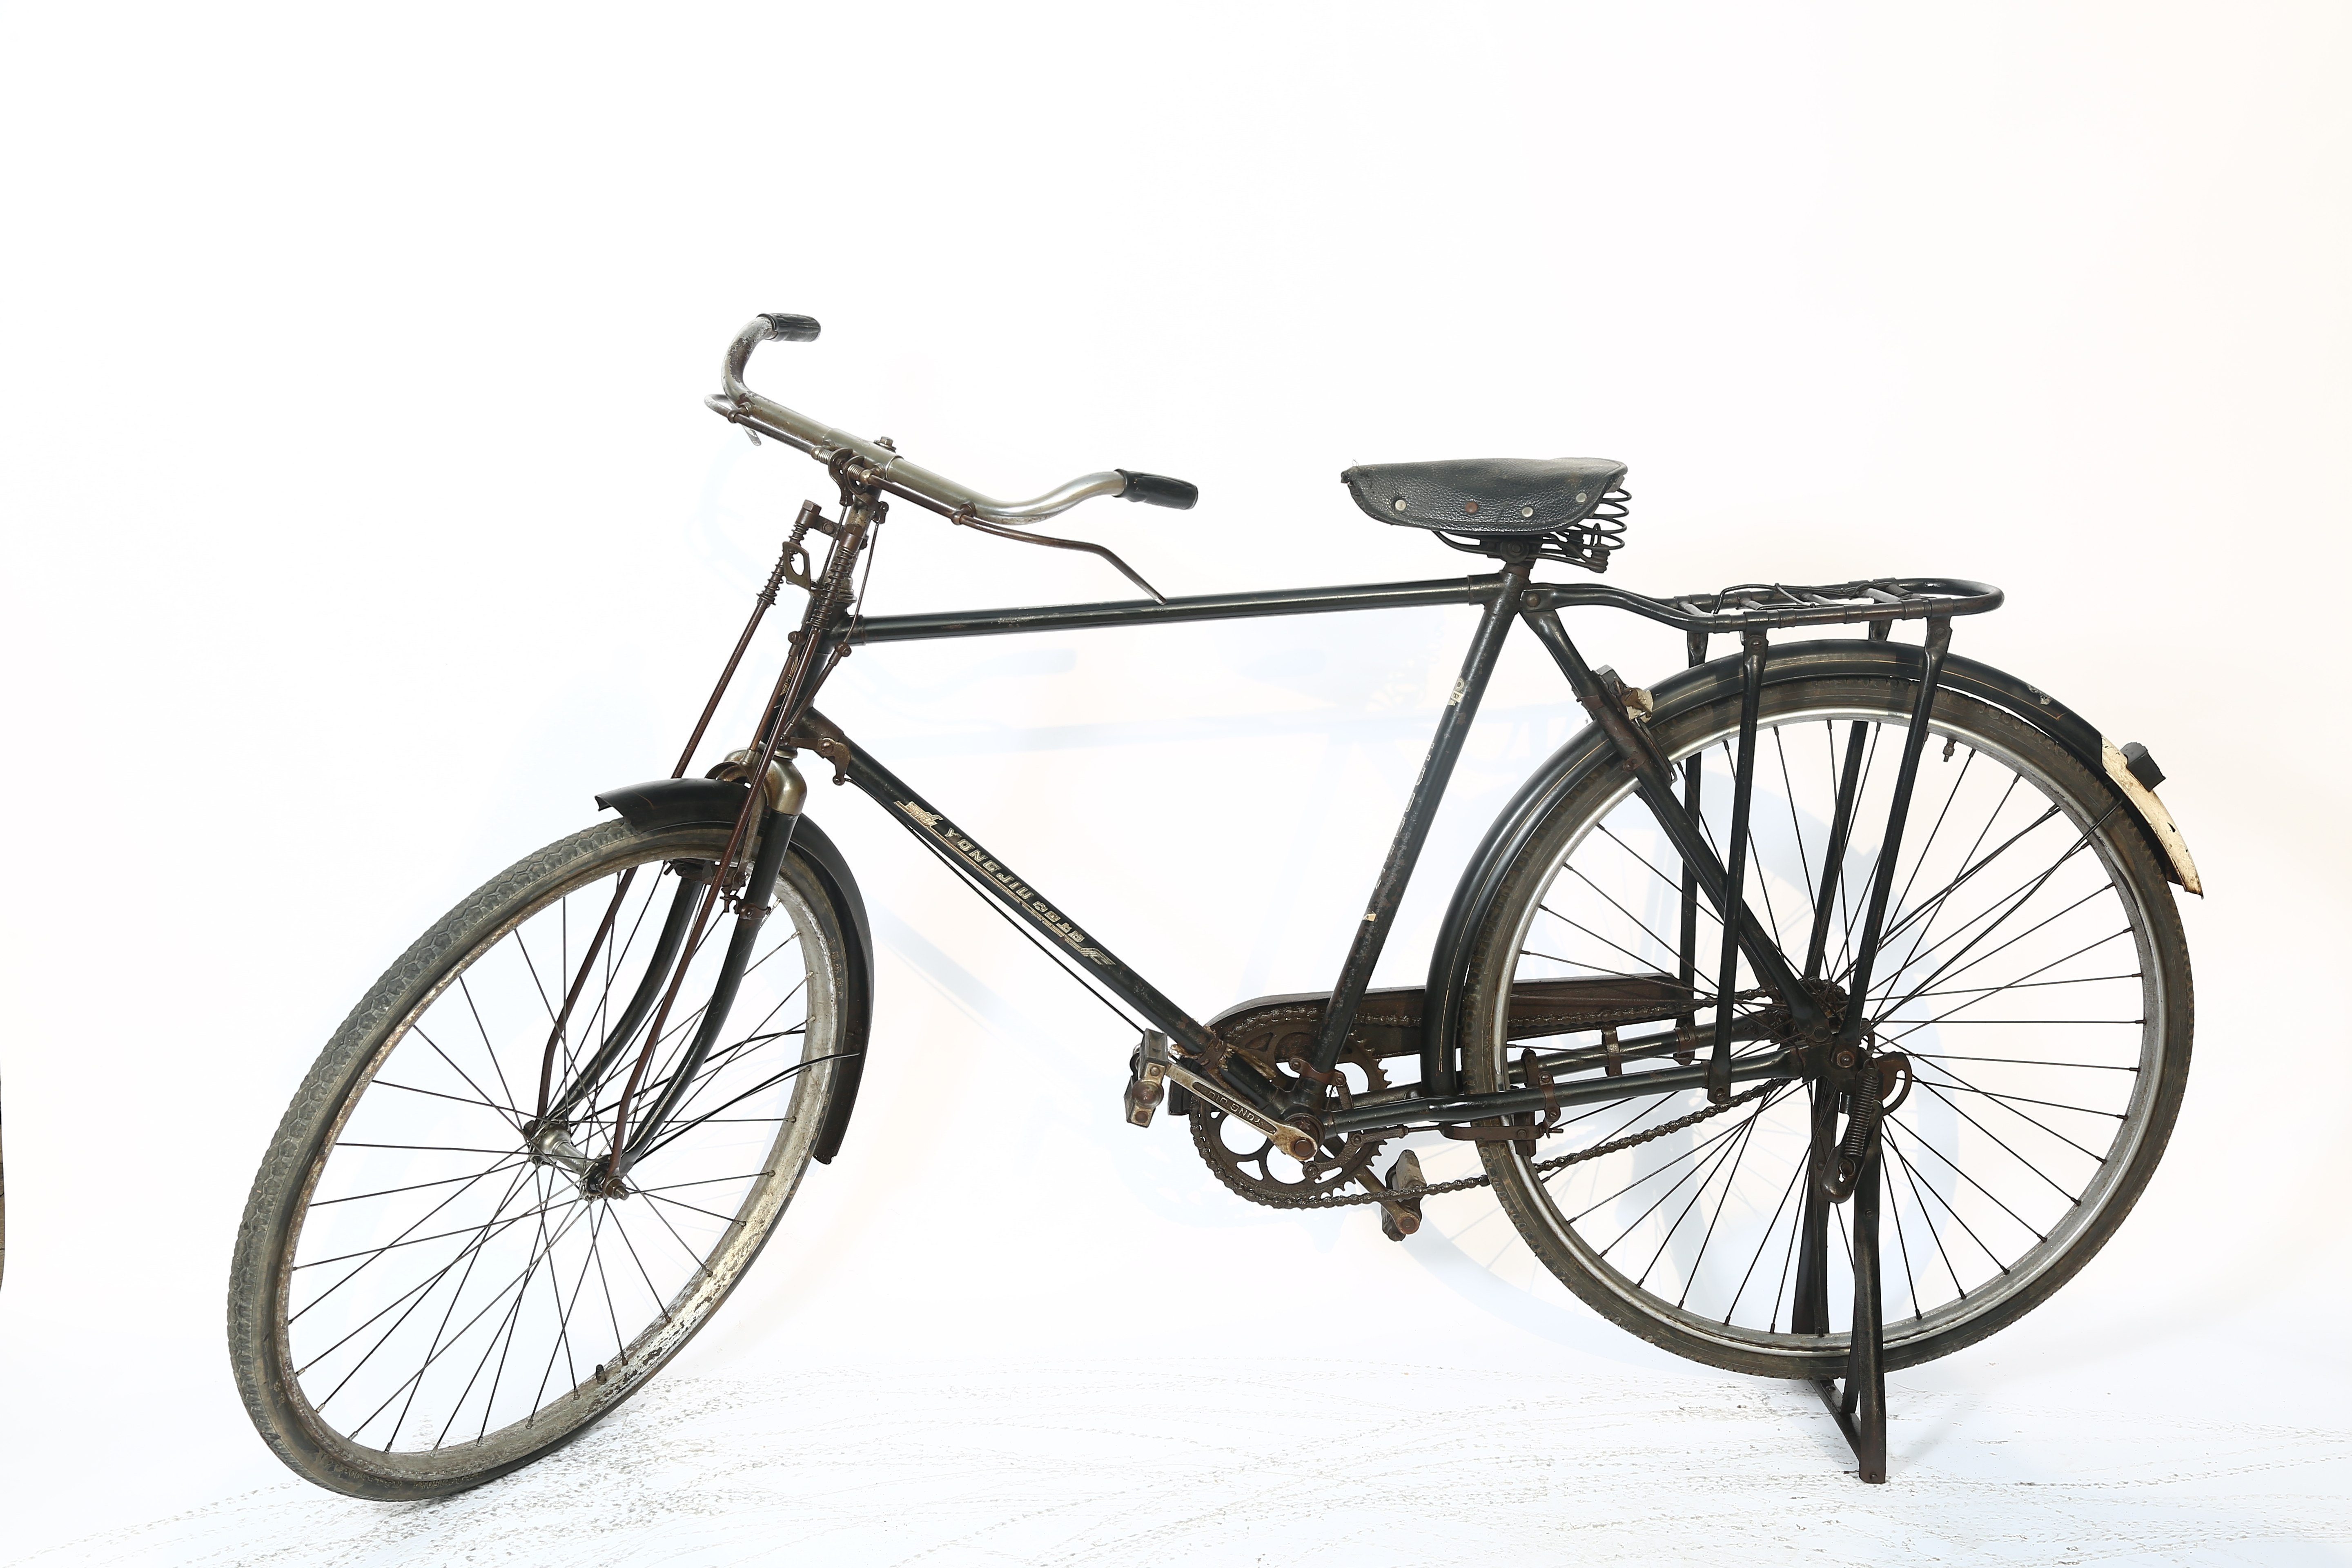 品名:永久牌自行车 规格:51型 产地:上海 生产厂家:上海自行车厂 尺寸